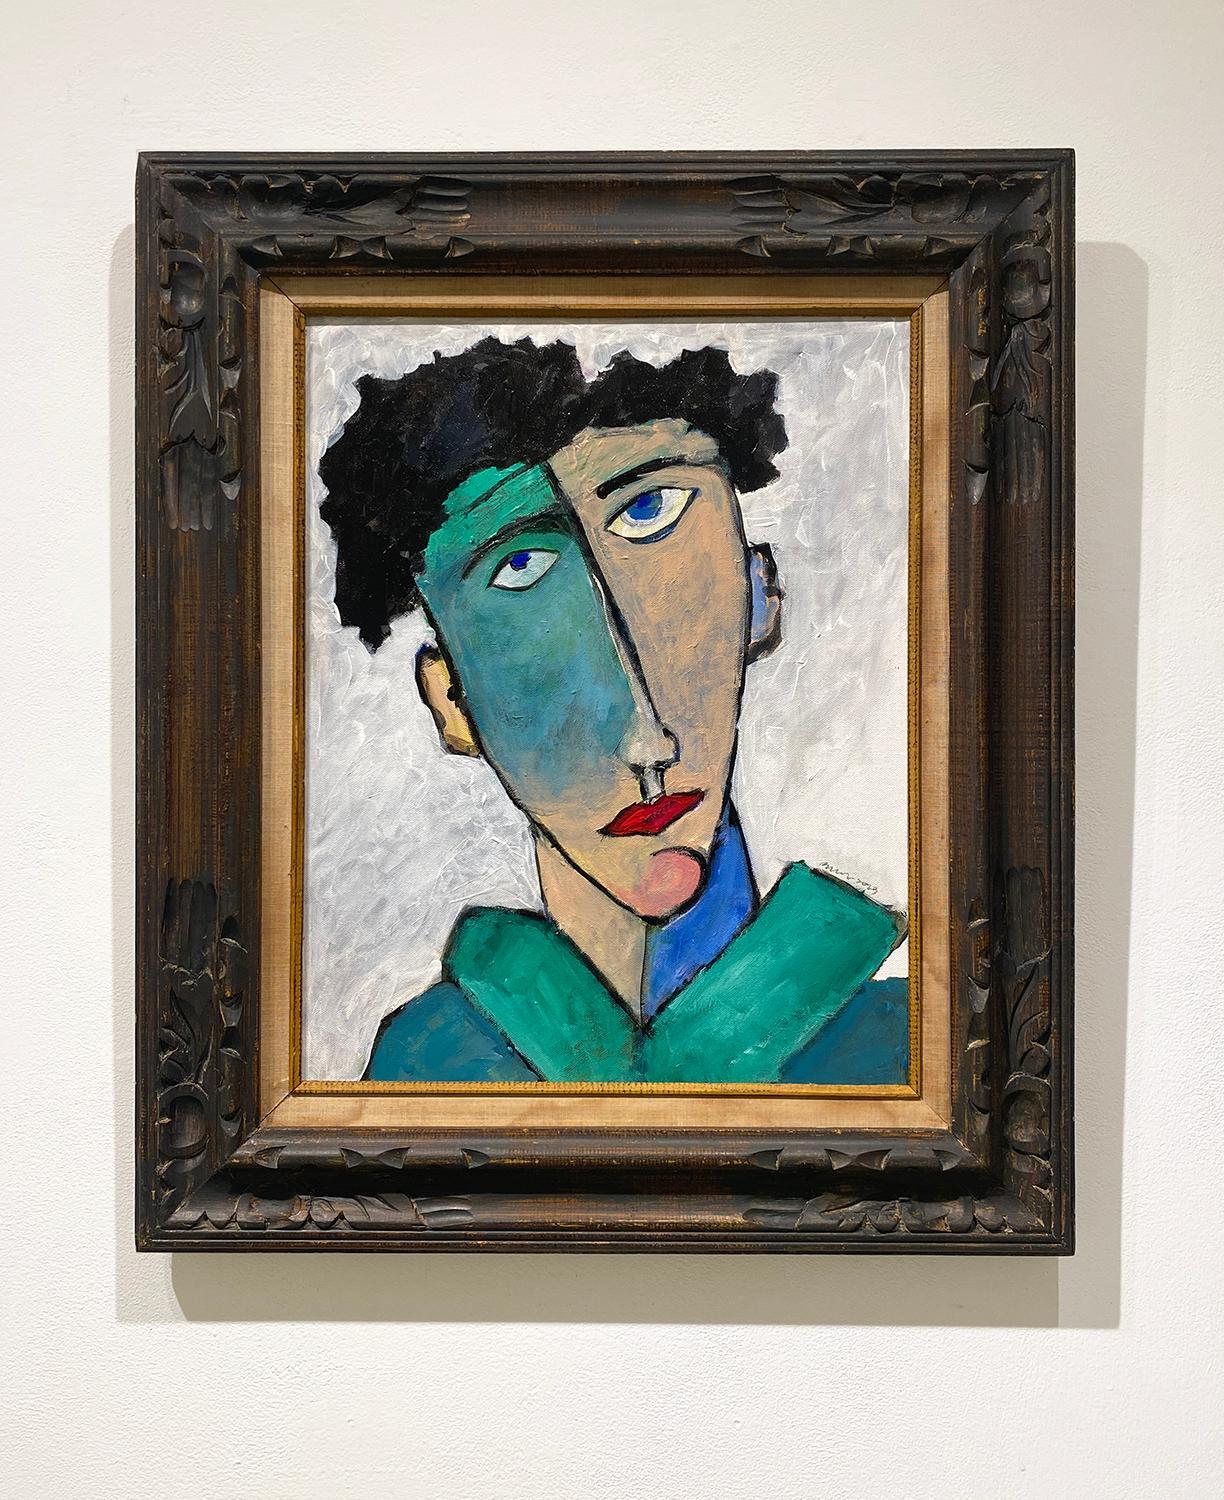 Porträt III (Fauvistisch, Modigliani inspiriertes, abstraktes Porträt in antikem Rahmen) – Painting von David Dew Bruner